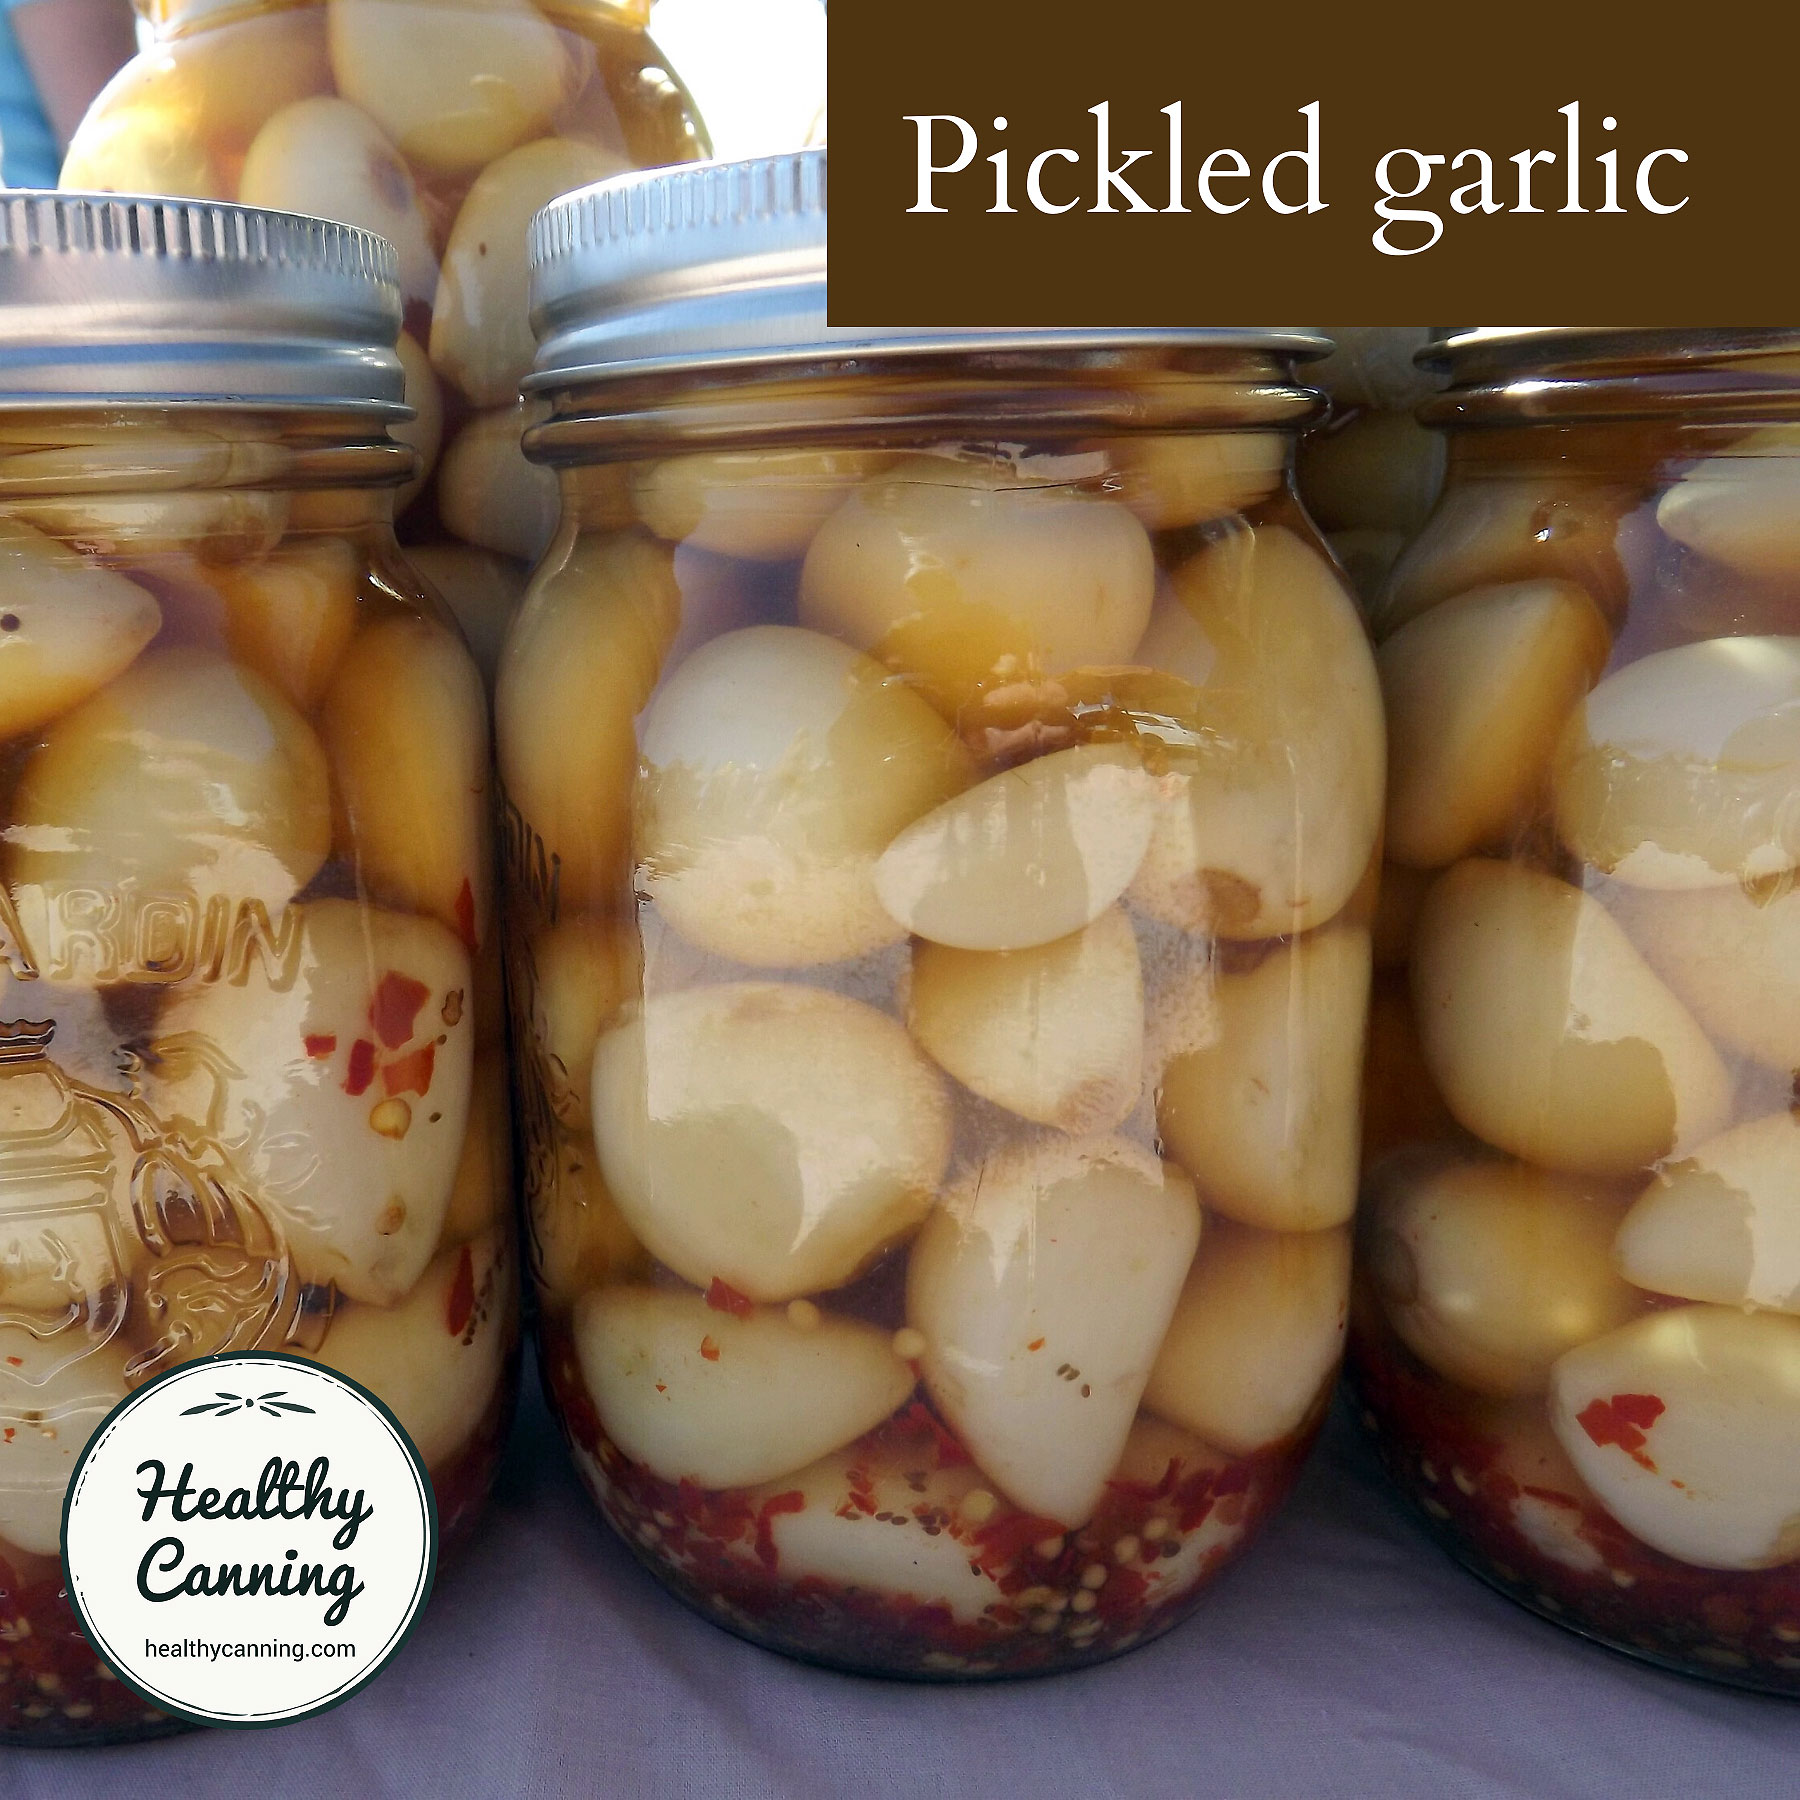 Pickled garlic in jars